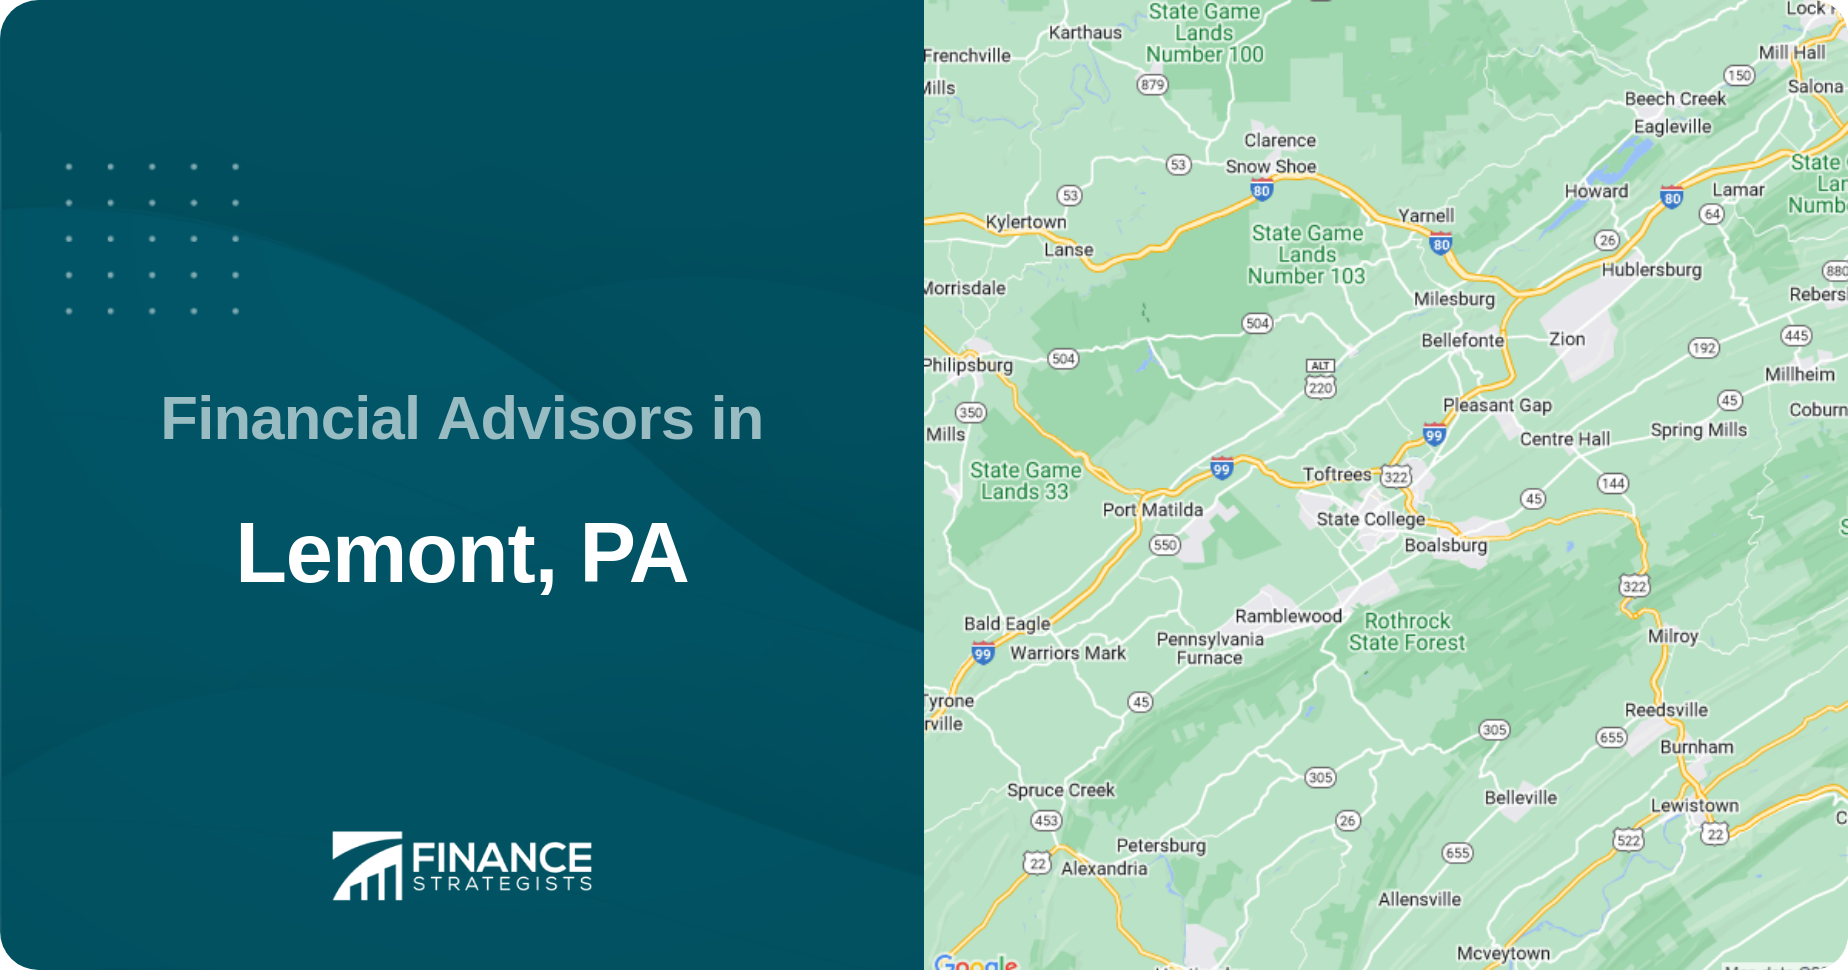 Financial Advisors in Lemont, PA